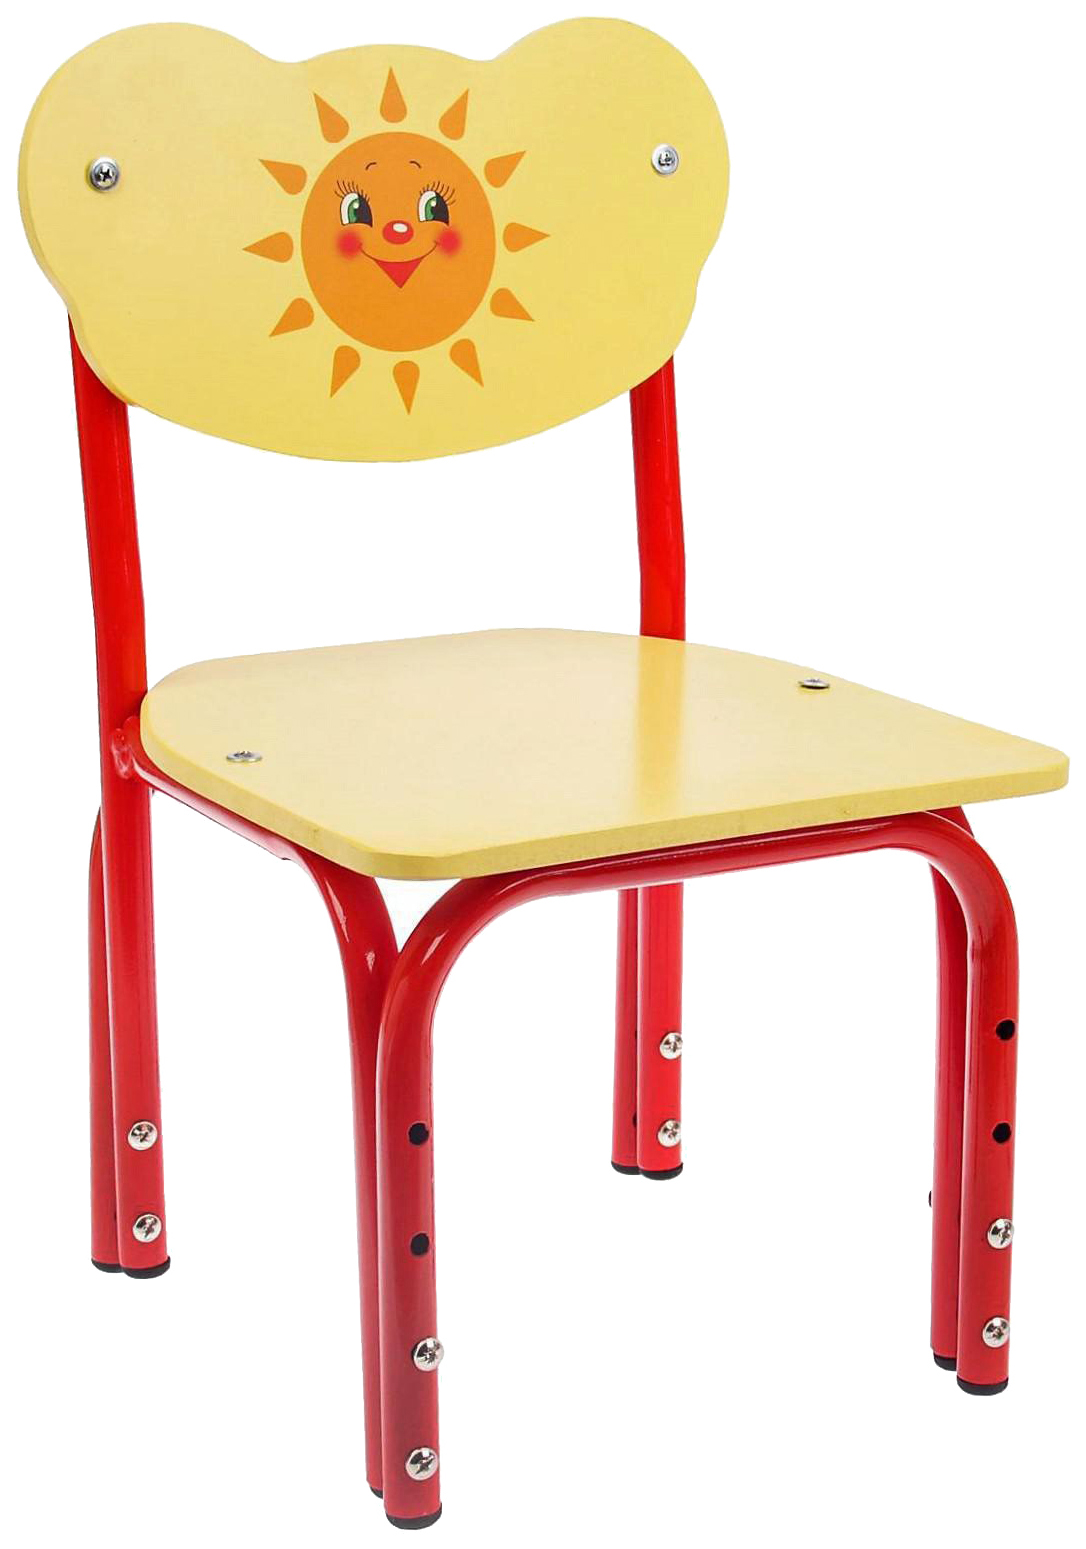 Детский стул Кузя. Солнышко, регулируемый, разборный детский растущий стул друг кузя слоновая кость